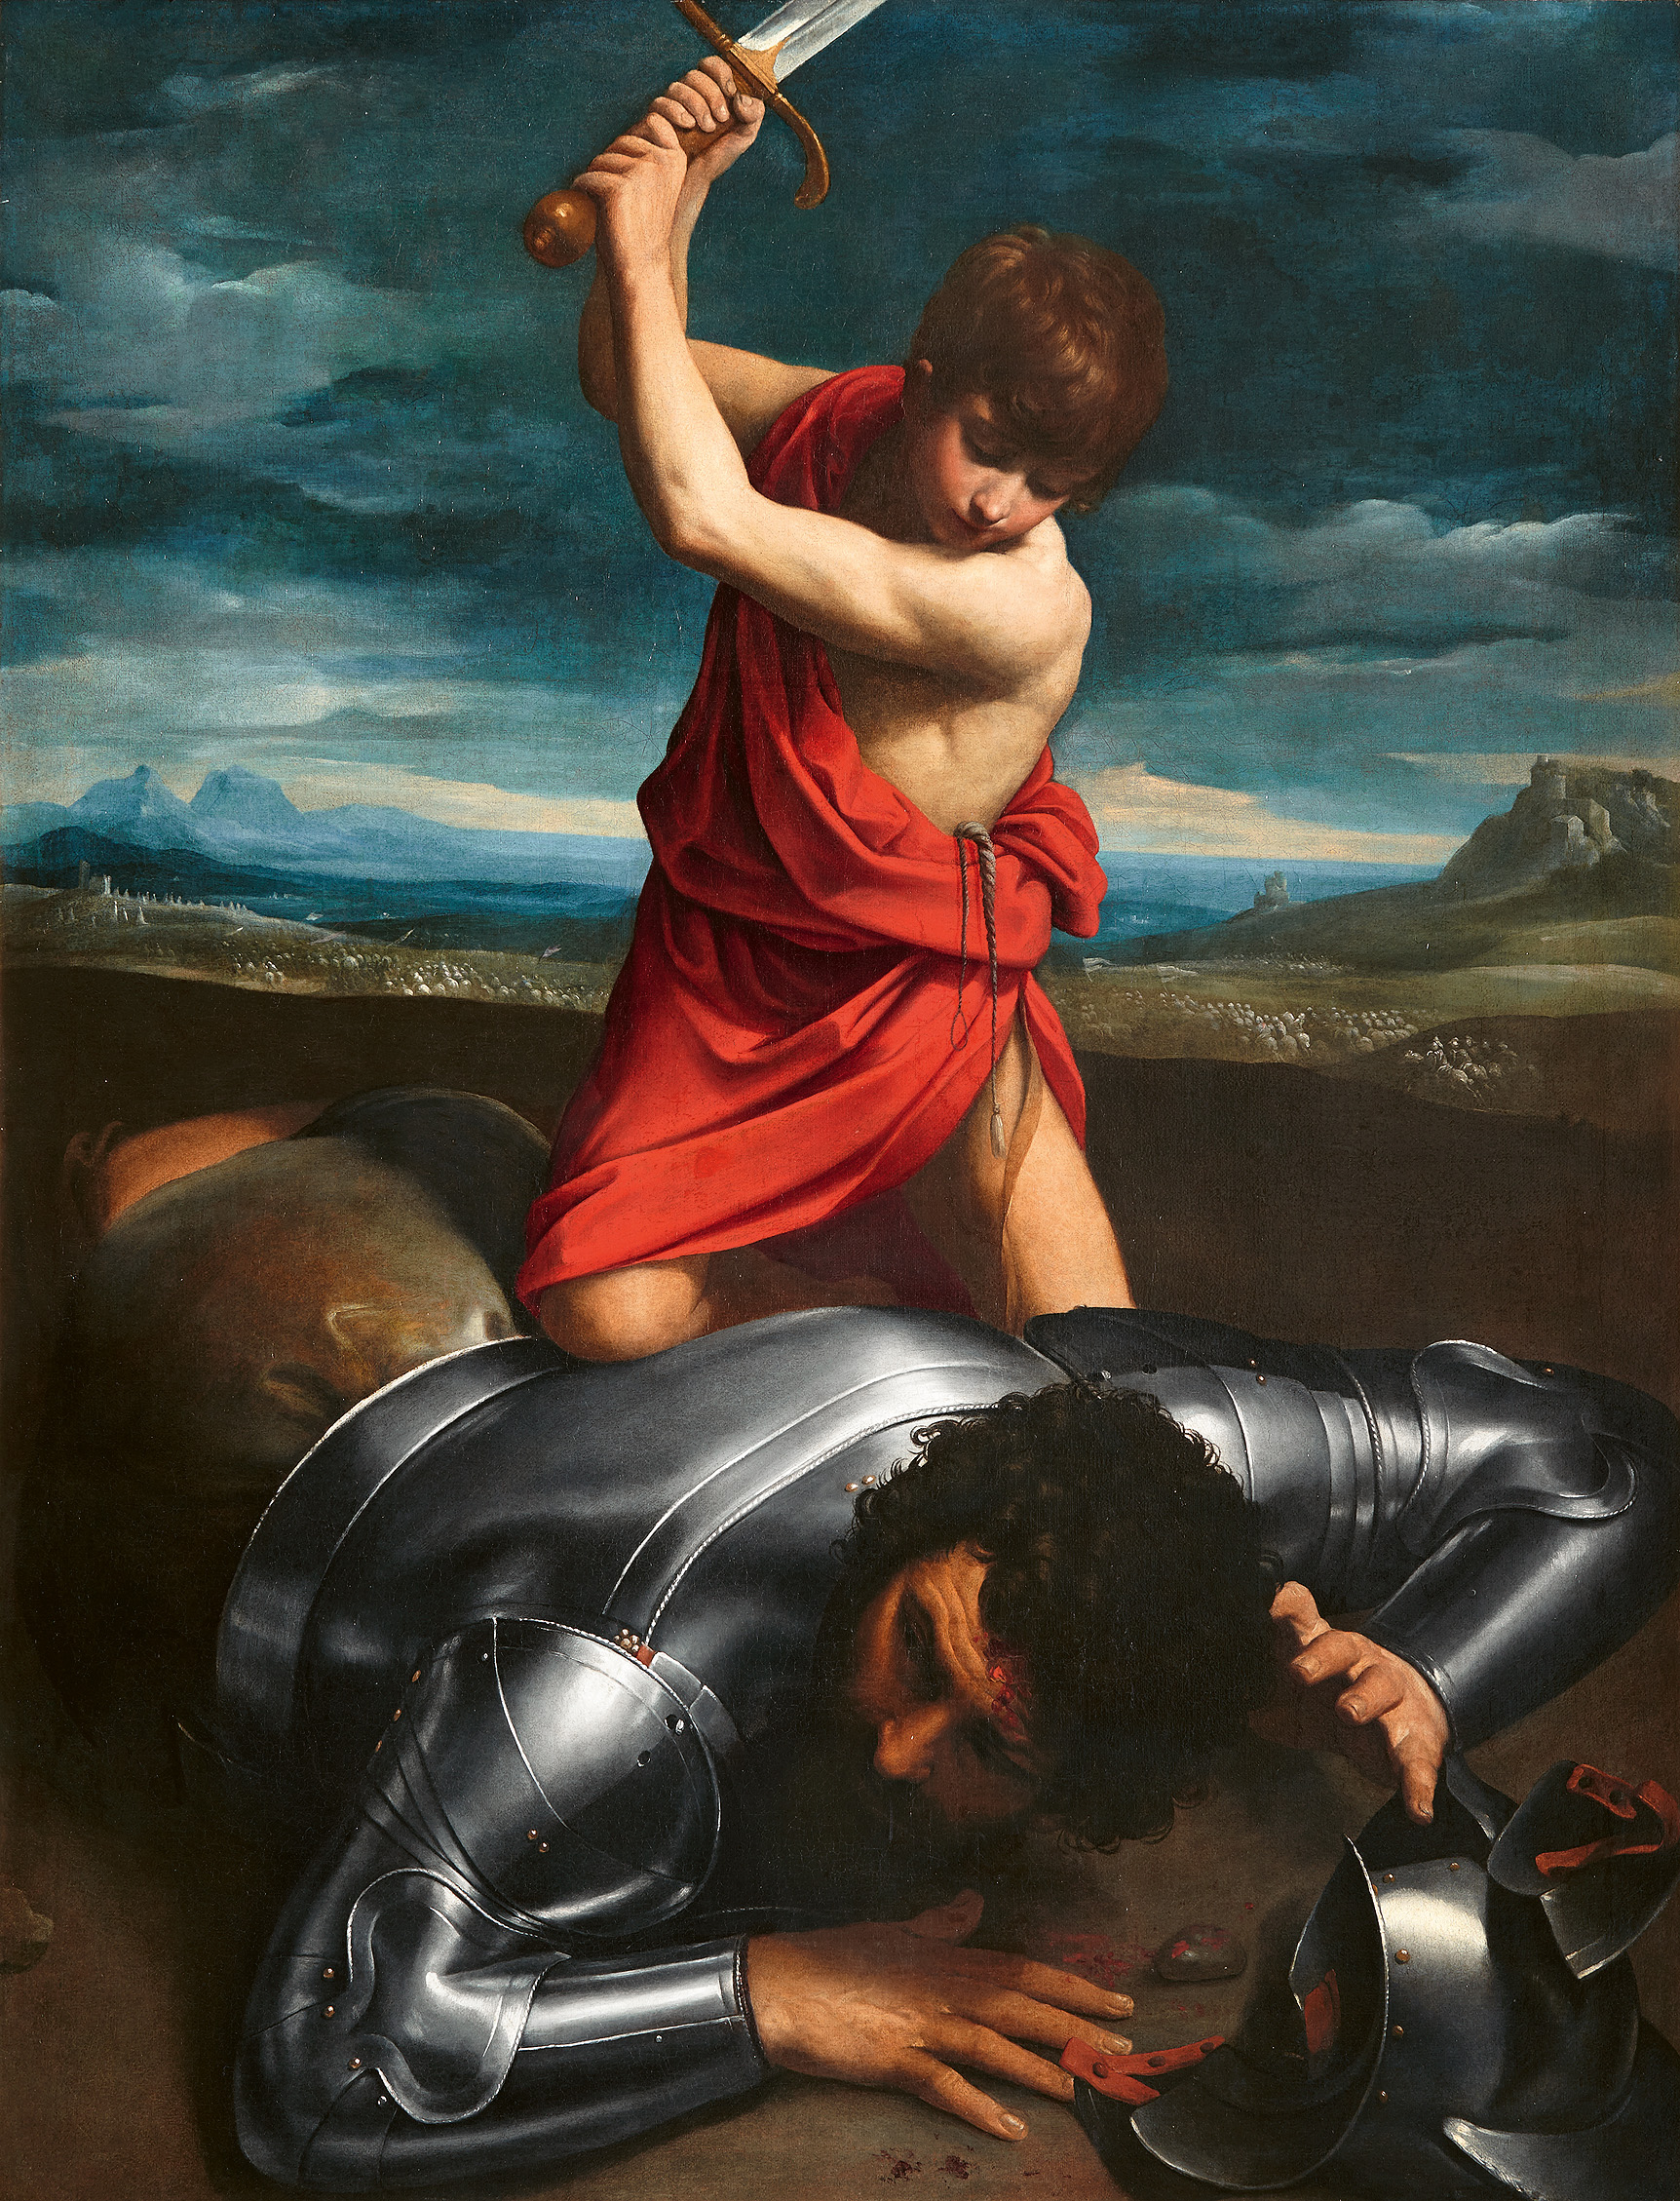 La caída de los Gigantes - Colección - Museo Nacional del Prado